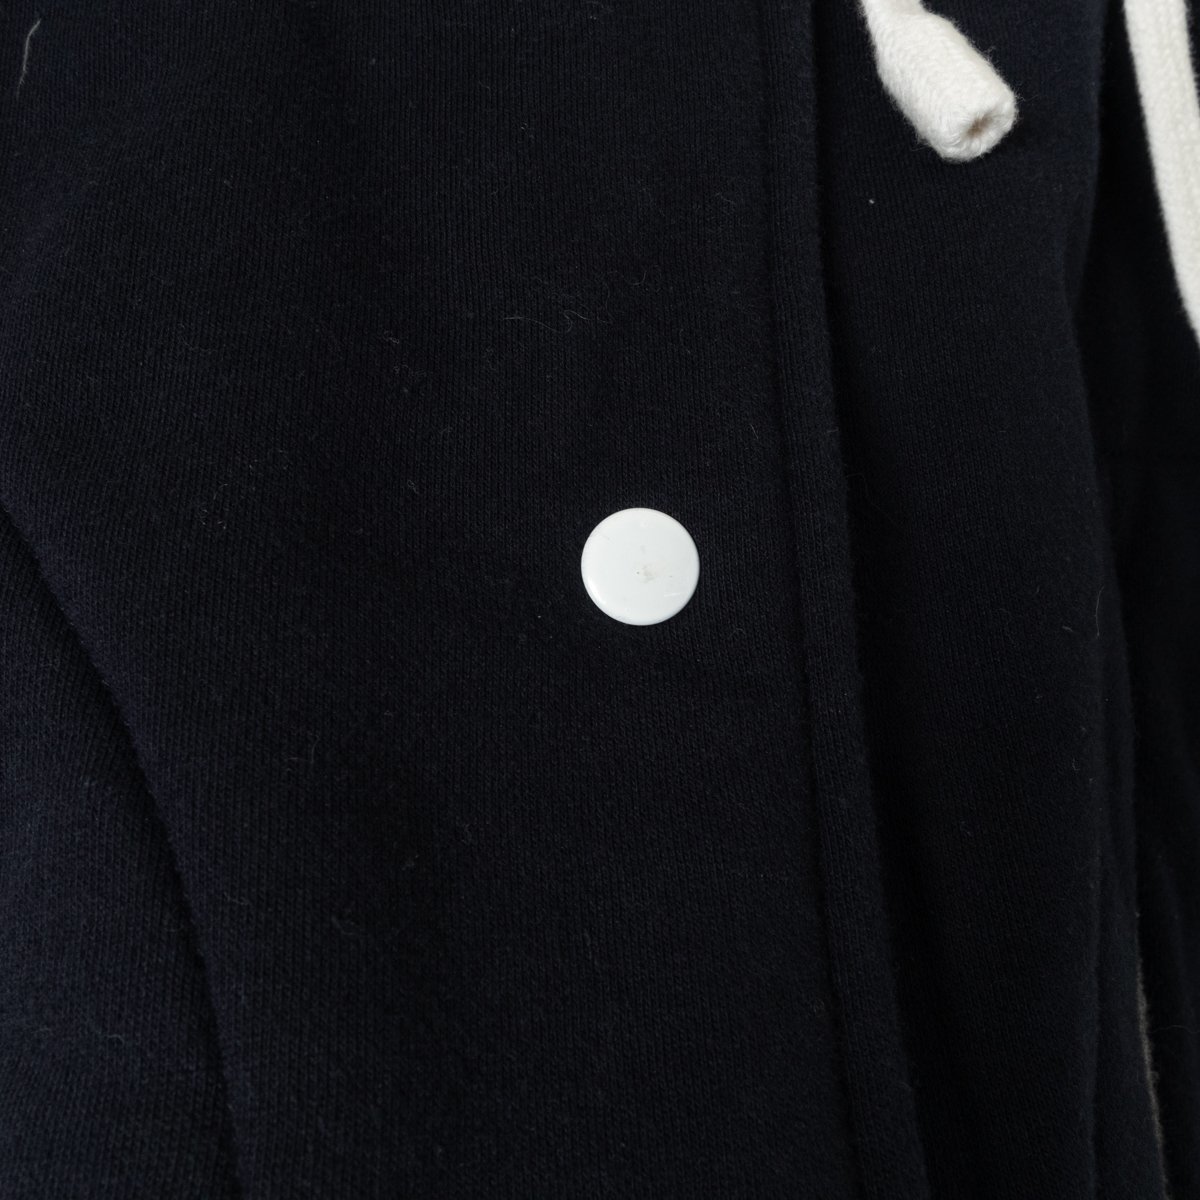 ANNA SUI アナスイ アメリカ製 スタジャン アウター フーディ 上着 裏フリース Sサイズ 綿 コットン ネイビー 紺 カジュアル